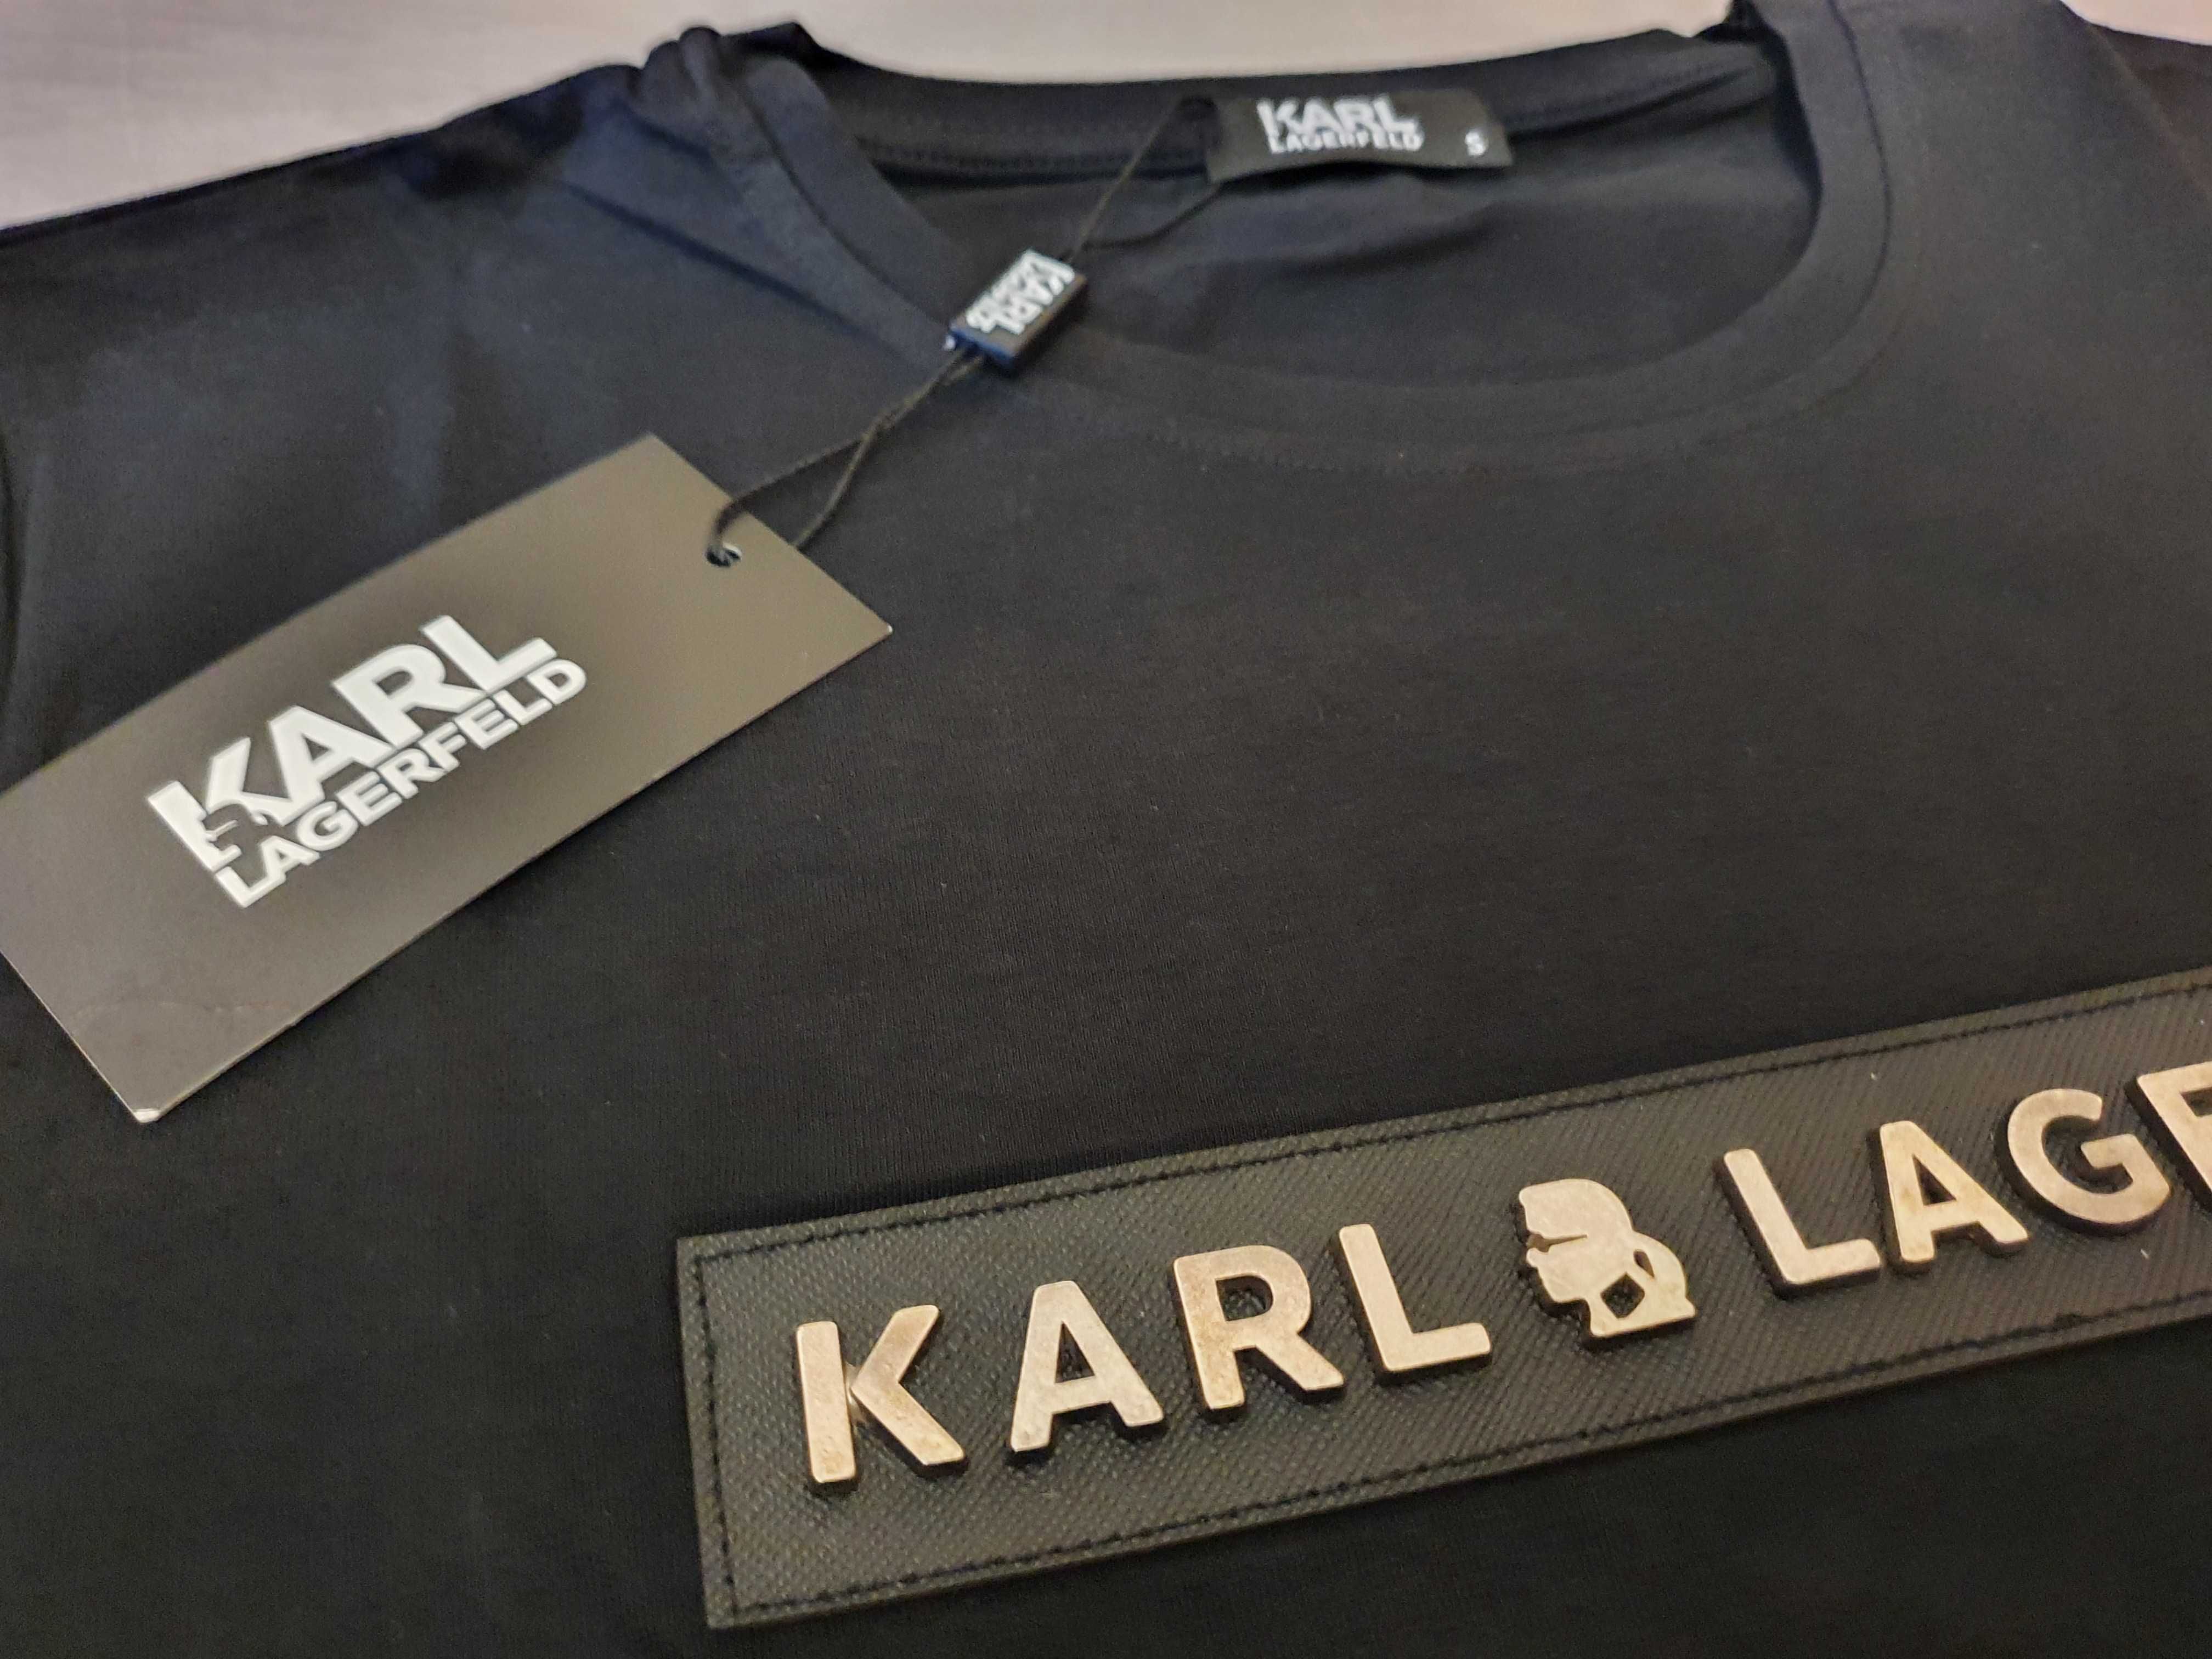 NOWY tshirt Karl Lagerfeld S M L XL koszulka Karl Blaszka sztos nowość